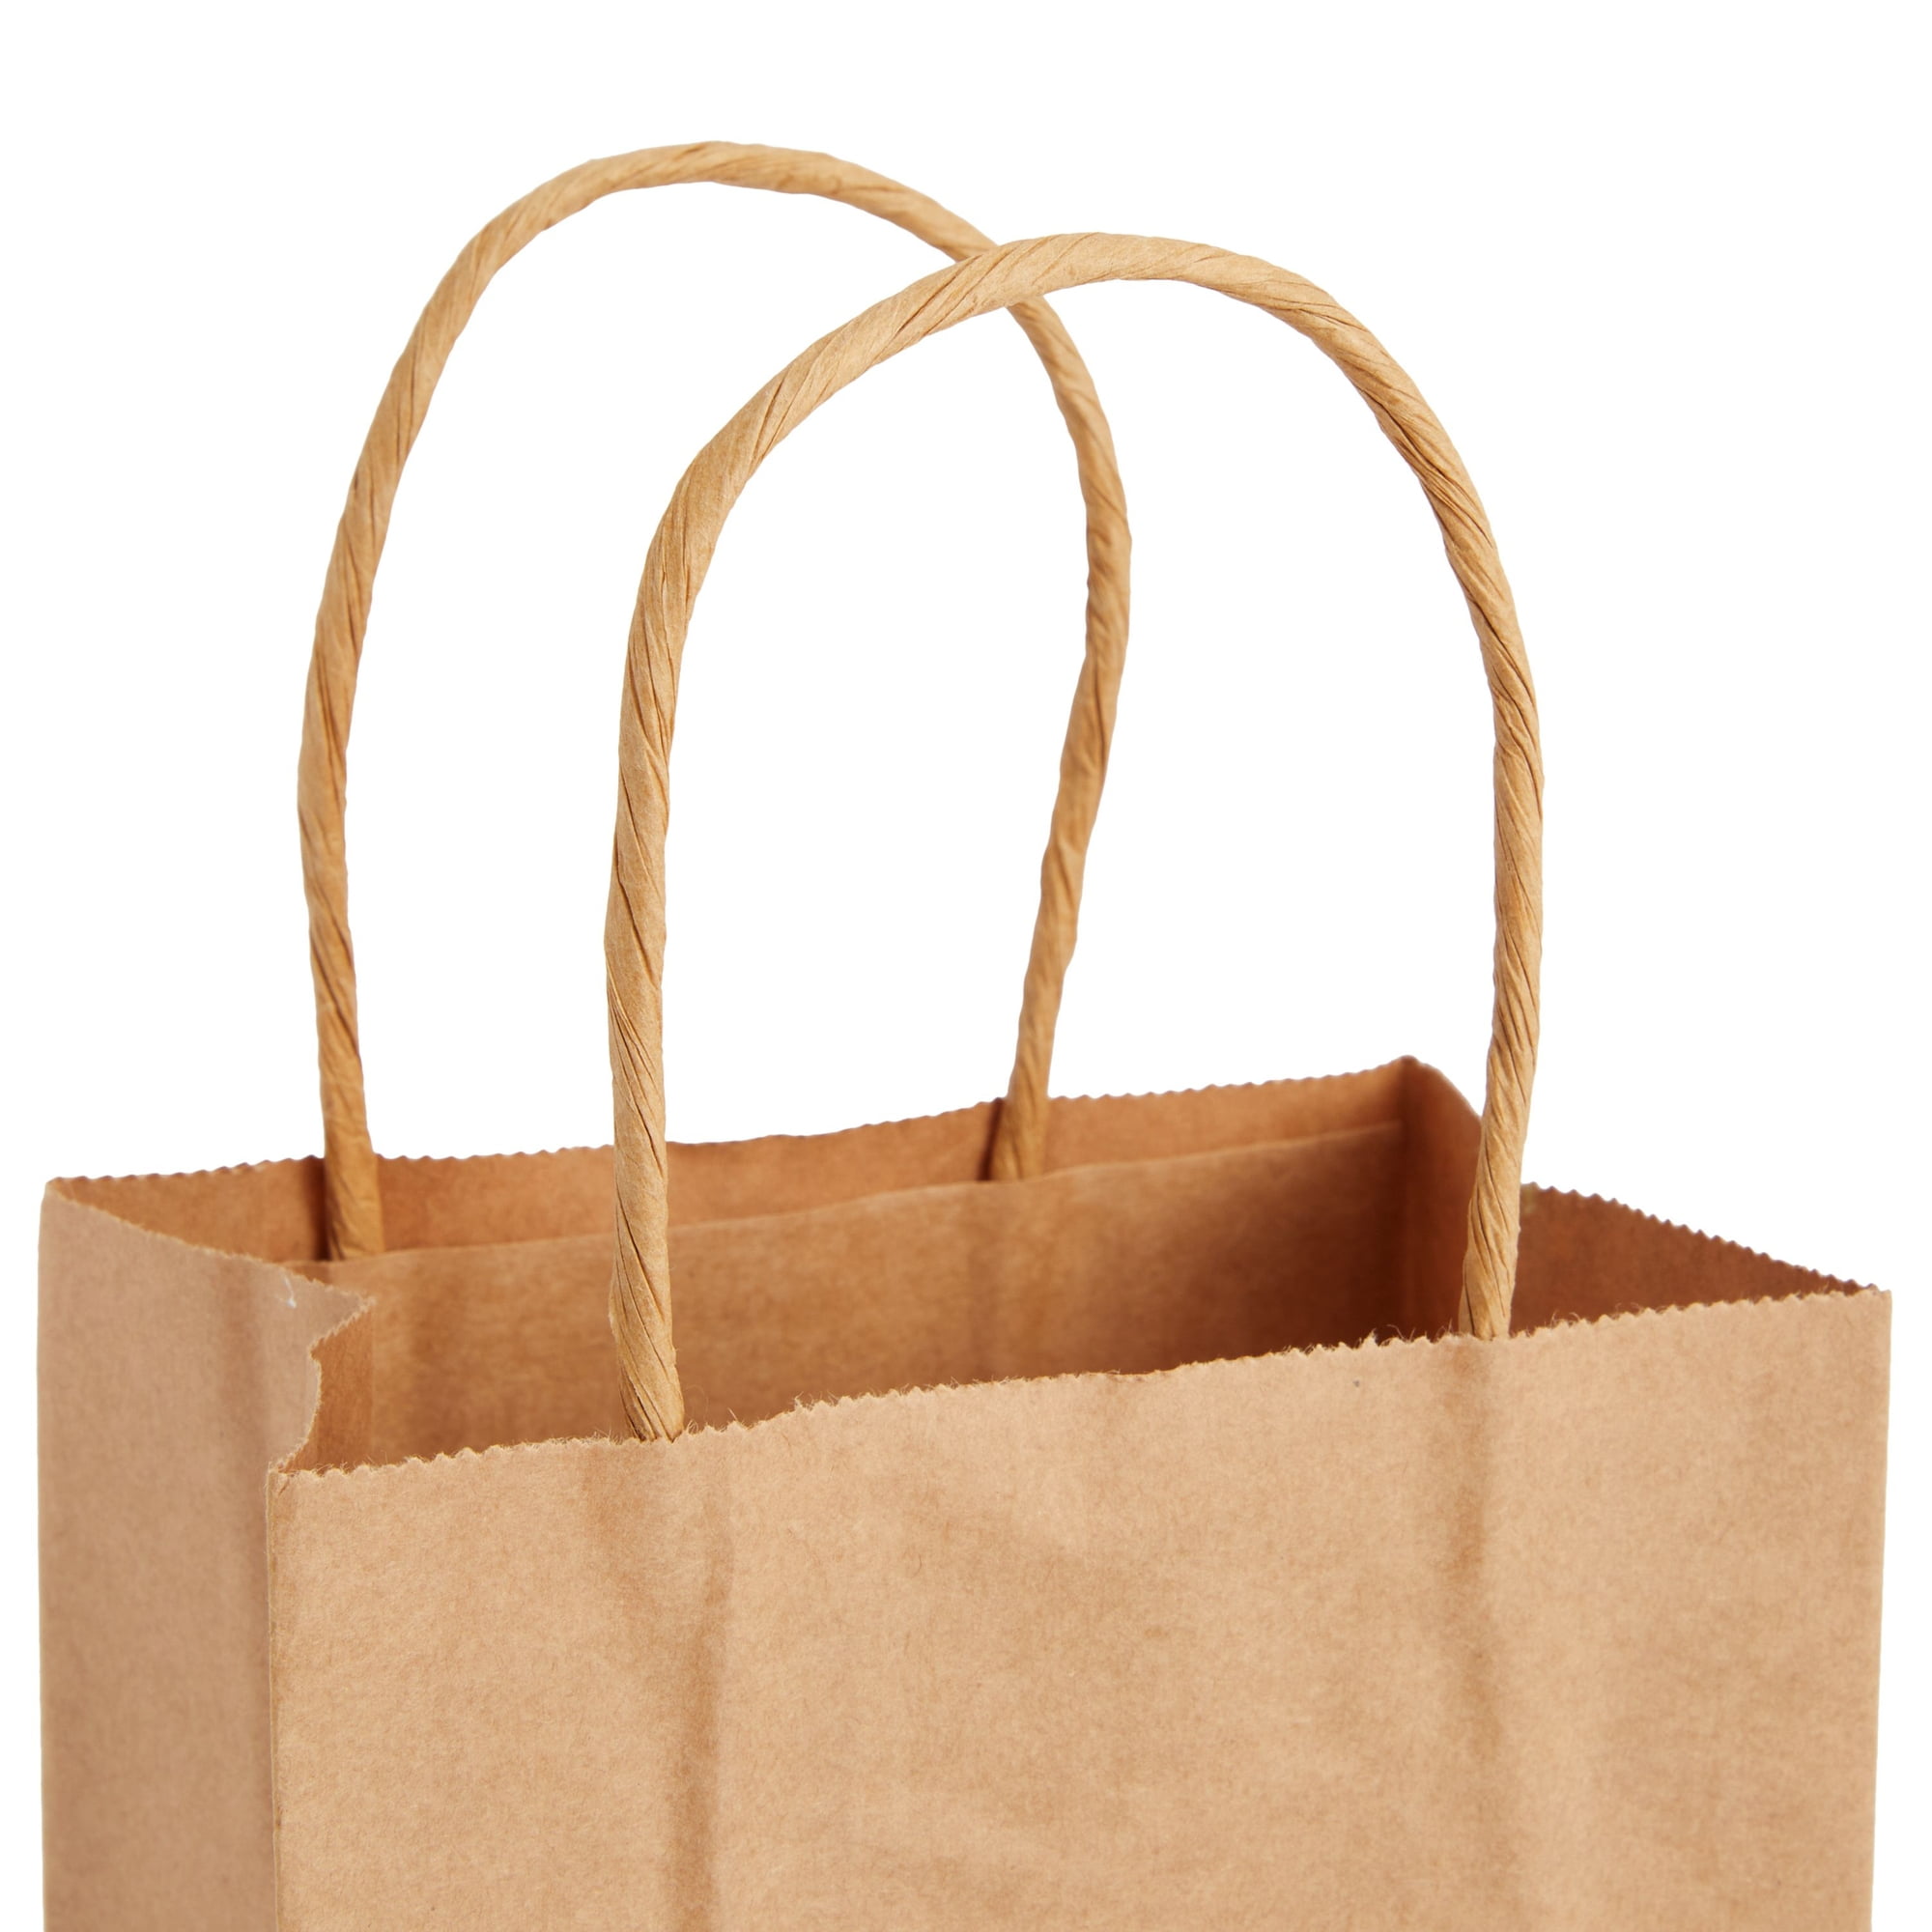 Baker's Dozen Small Gift Bags 5-1/4 inchx3-1, 330749